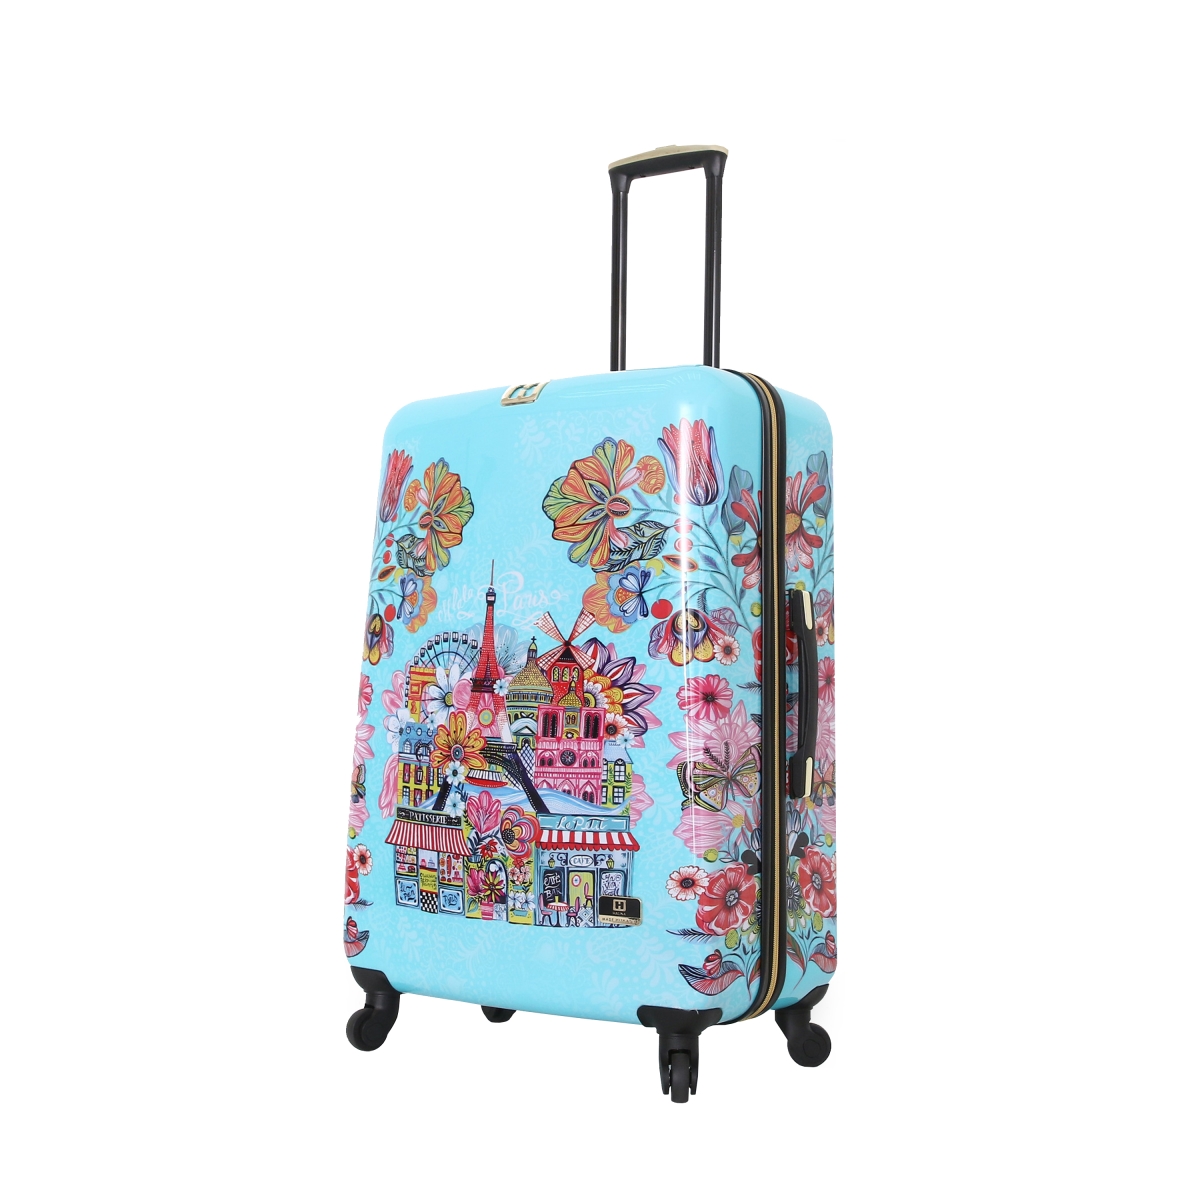 H1004-28-colnn 28 In. Car Pintos Oh La La Floral Cartoon Carry On Luggage, Multicolor